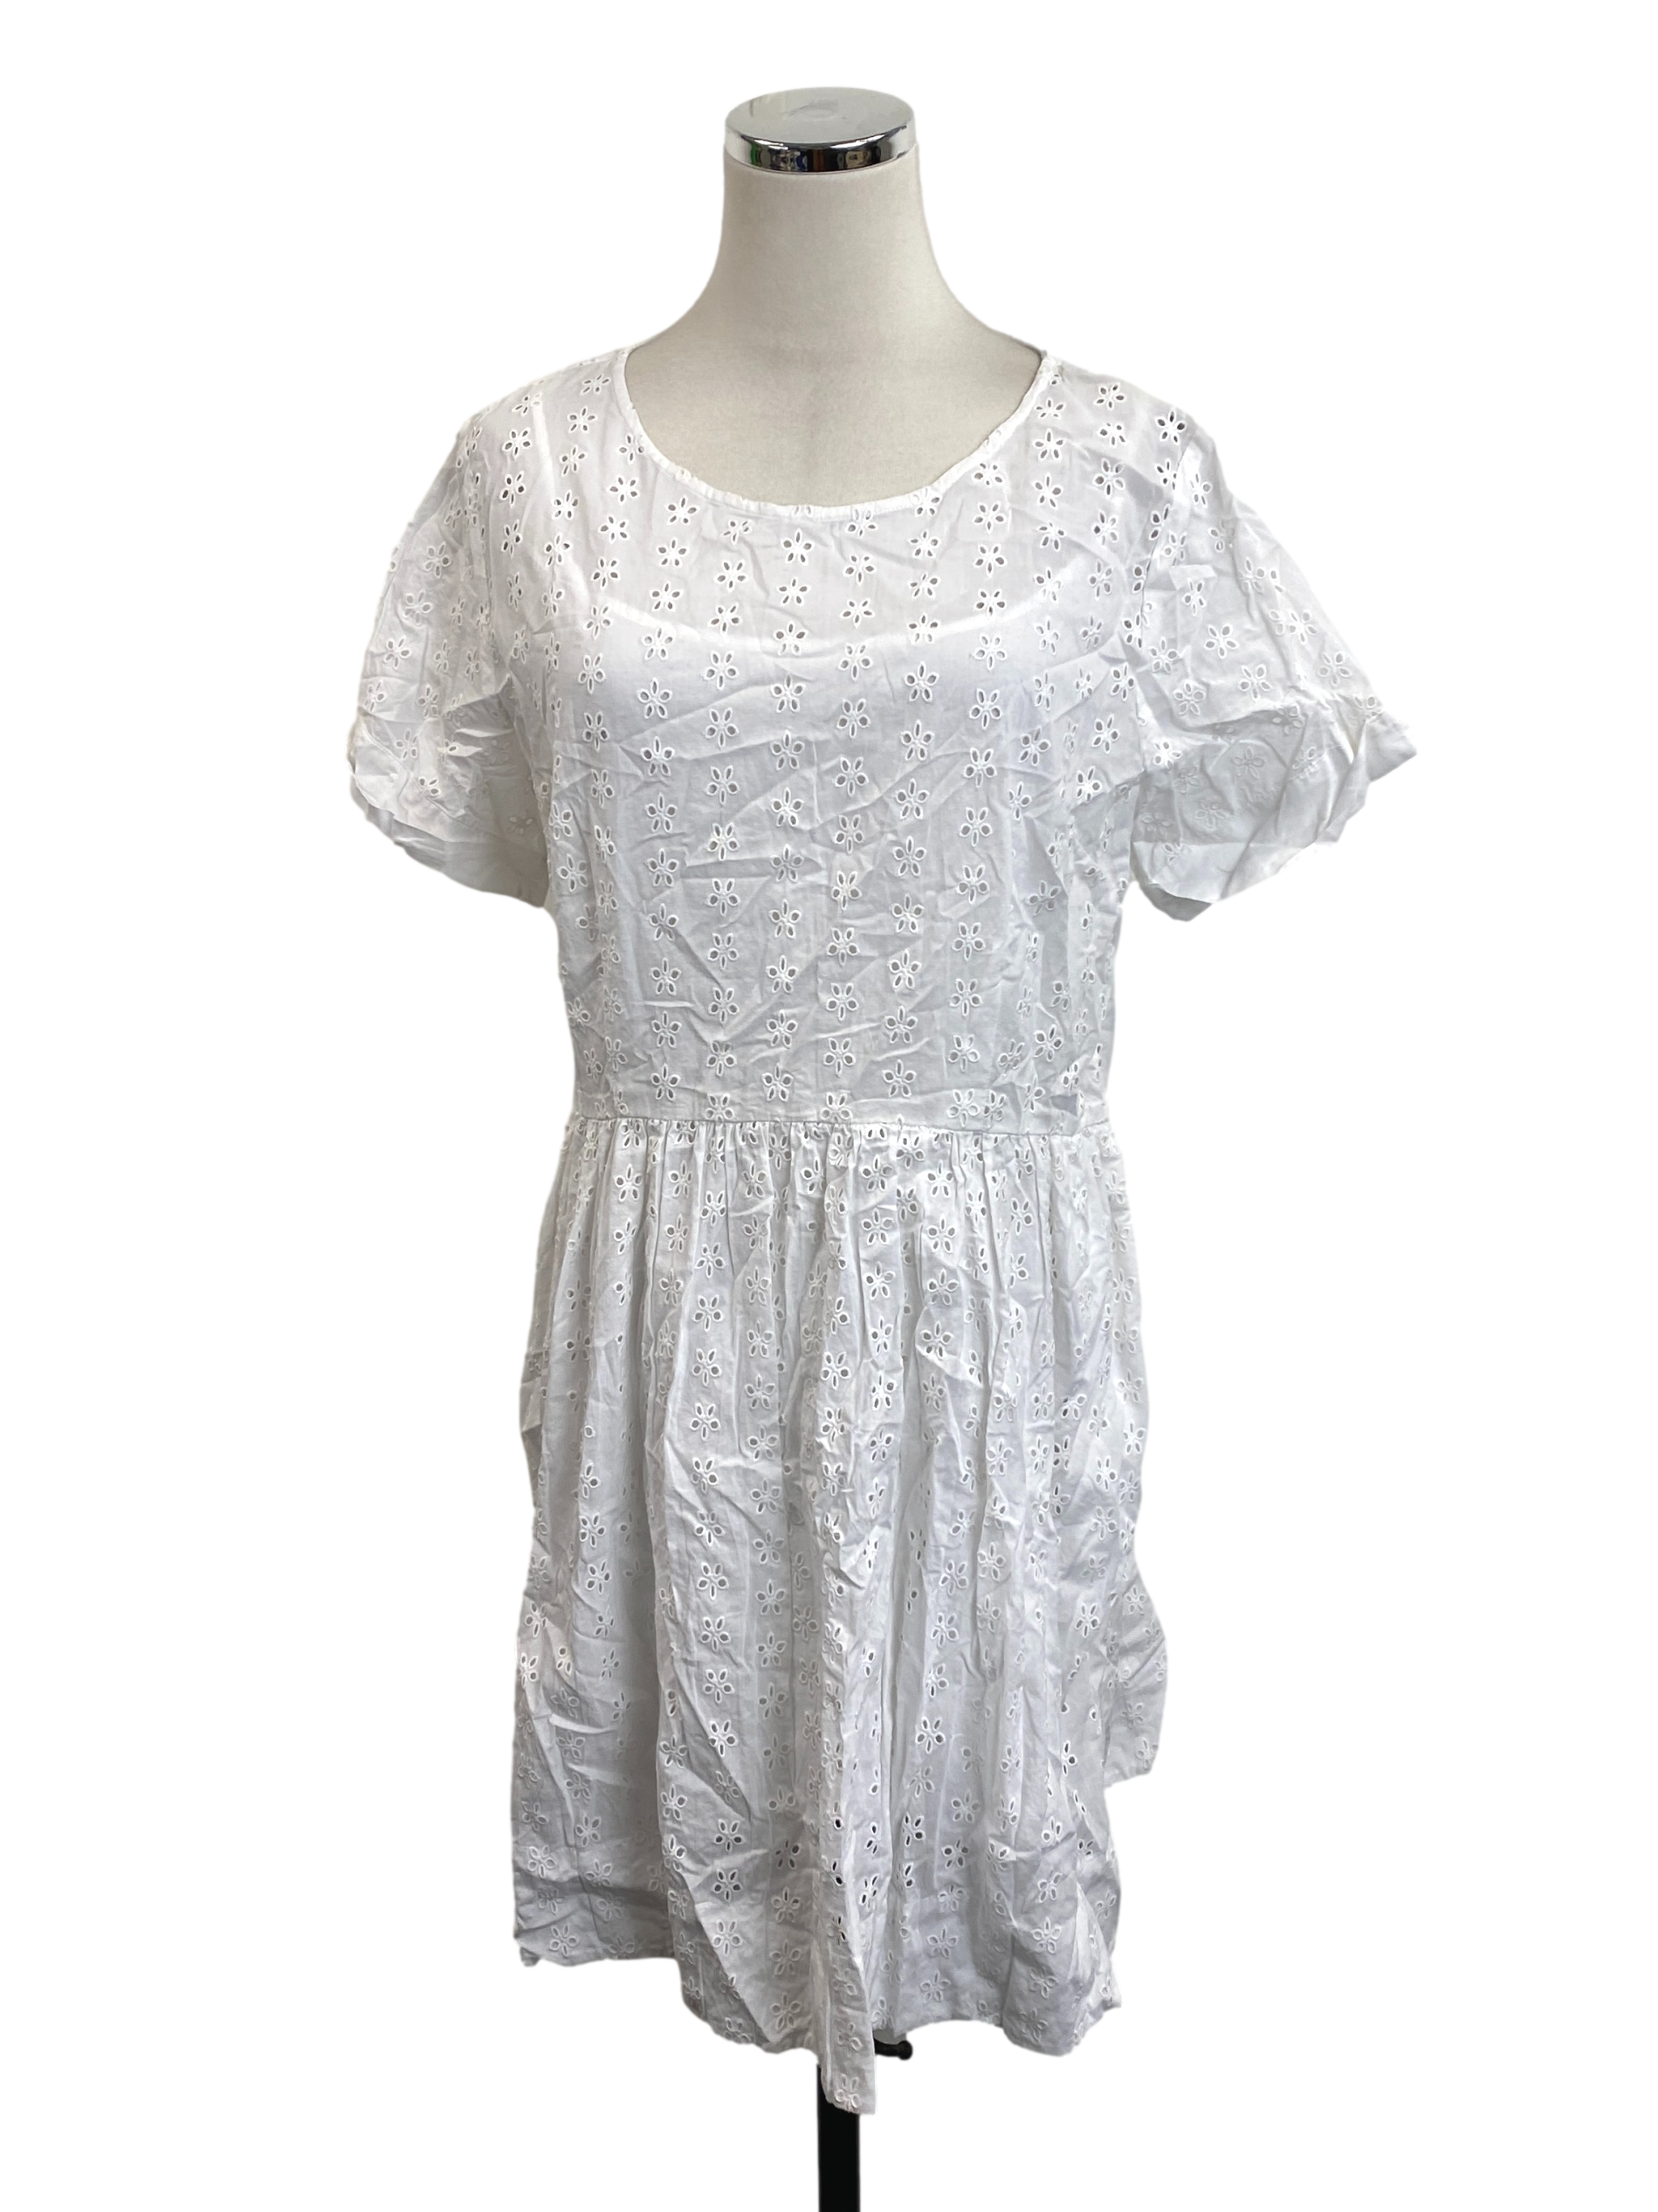 Procelain White Shirt Dress